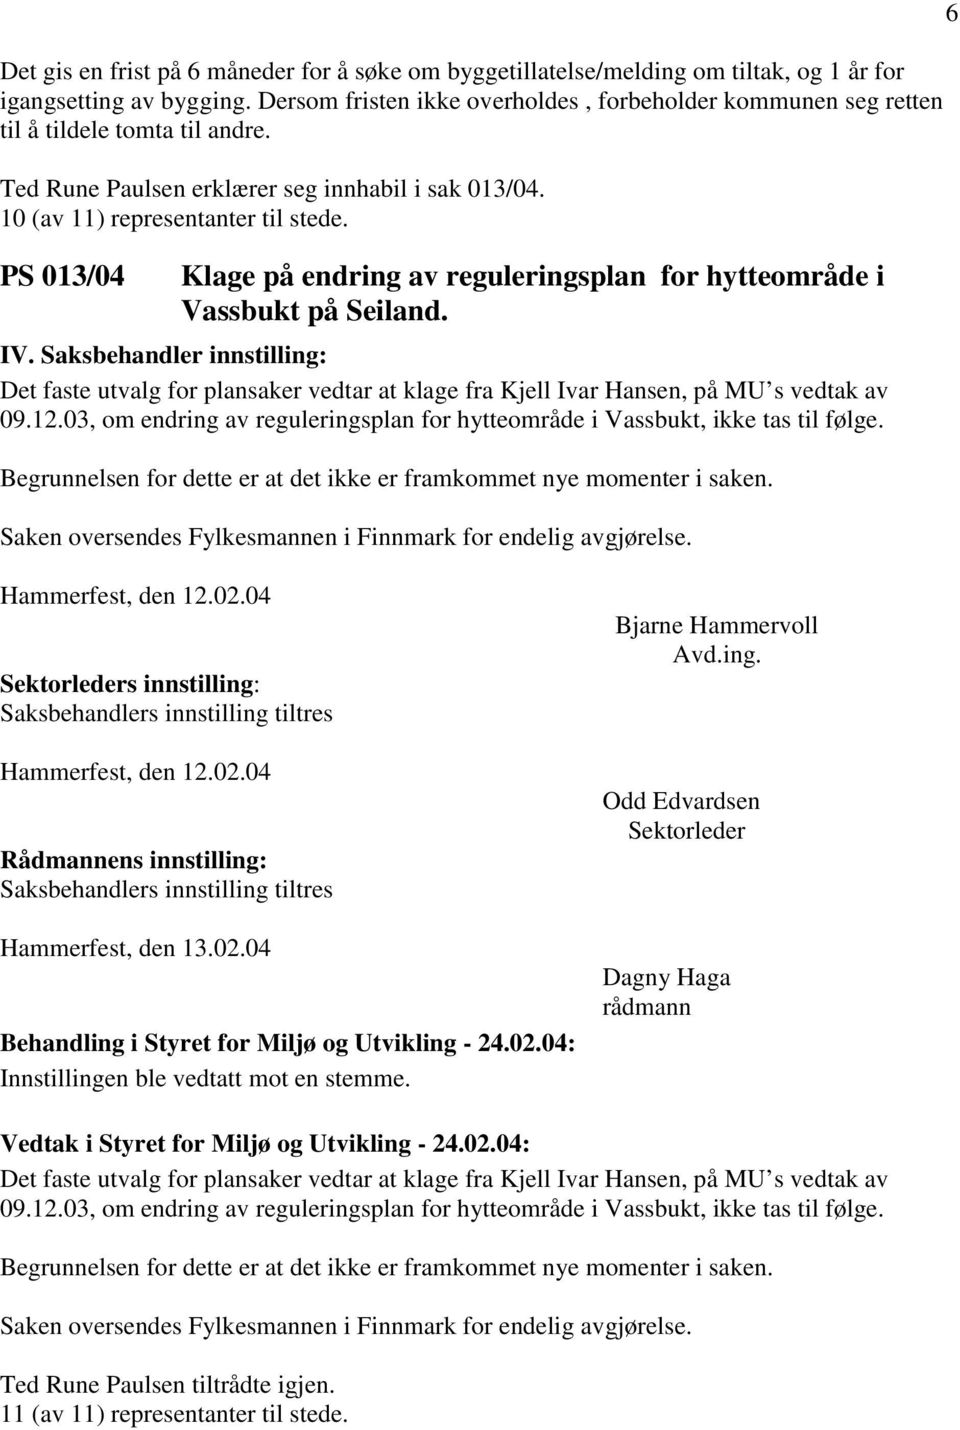 PS 013/04 Klage på endring av reguleringsplan for hytteområde i Vassbukt på Seiland. Det faste utvalg for plansaker vedtar at klage fra Kjell Ivar Hansen, på MU s vedtak av 09.12.